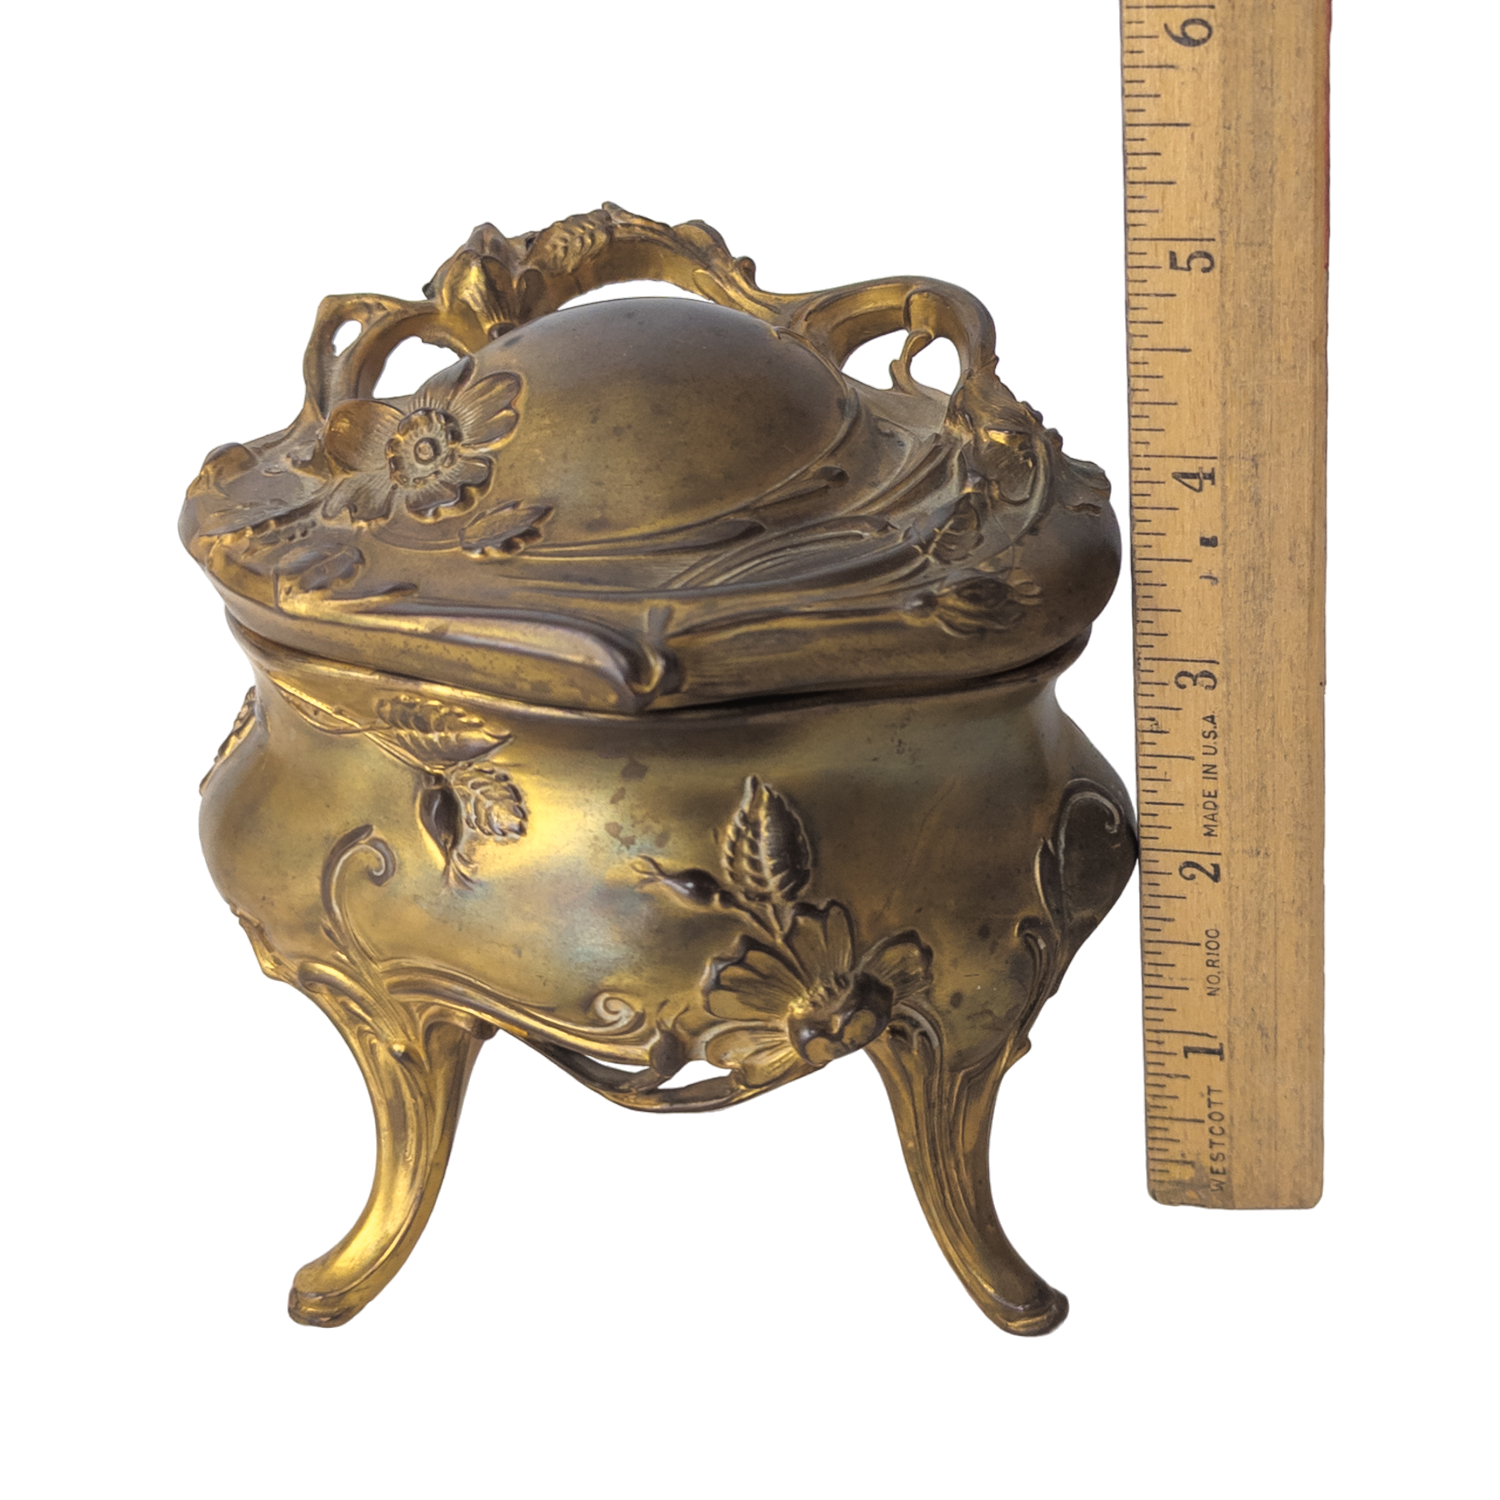 Antique Art Nouveau Cast Metal Jewelry Casket